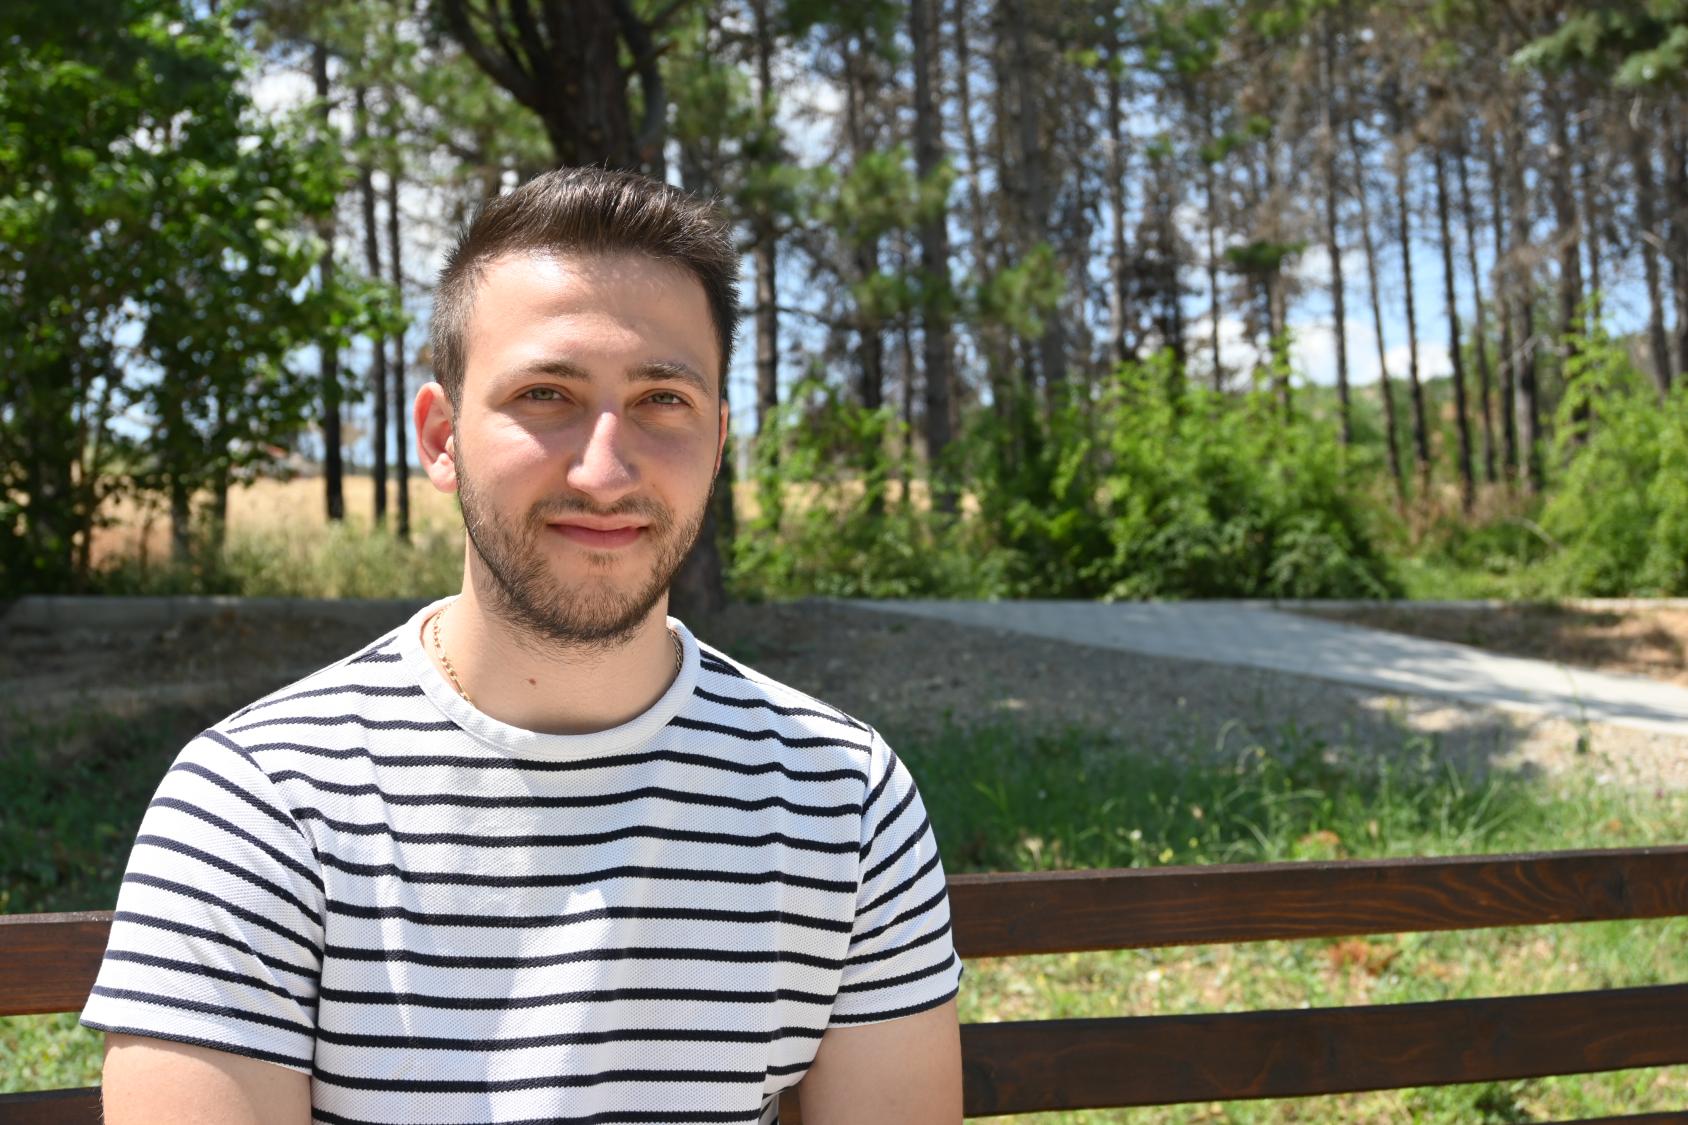 ألكسندر ميلوشفيك، المسؤول عن شبكة تثقيف الشباب على يد الأقران في مقدونيا الشمالية يظهر فيي يسار الصورة جالسًا على مقعد في حديقة.